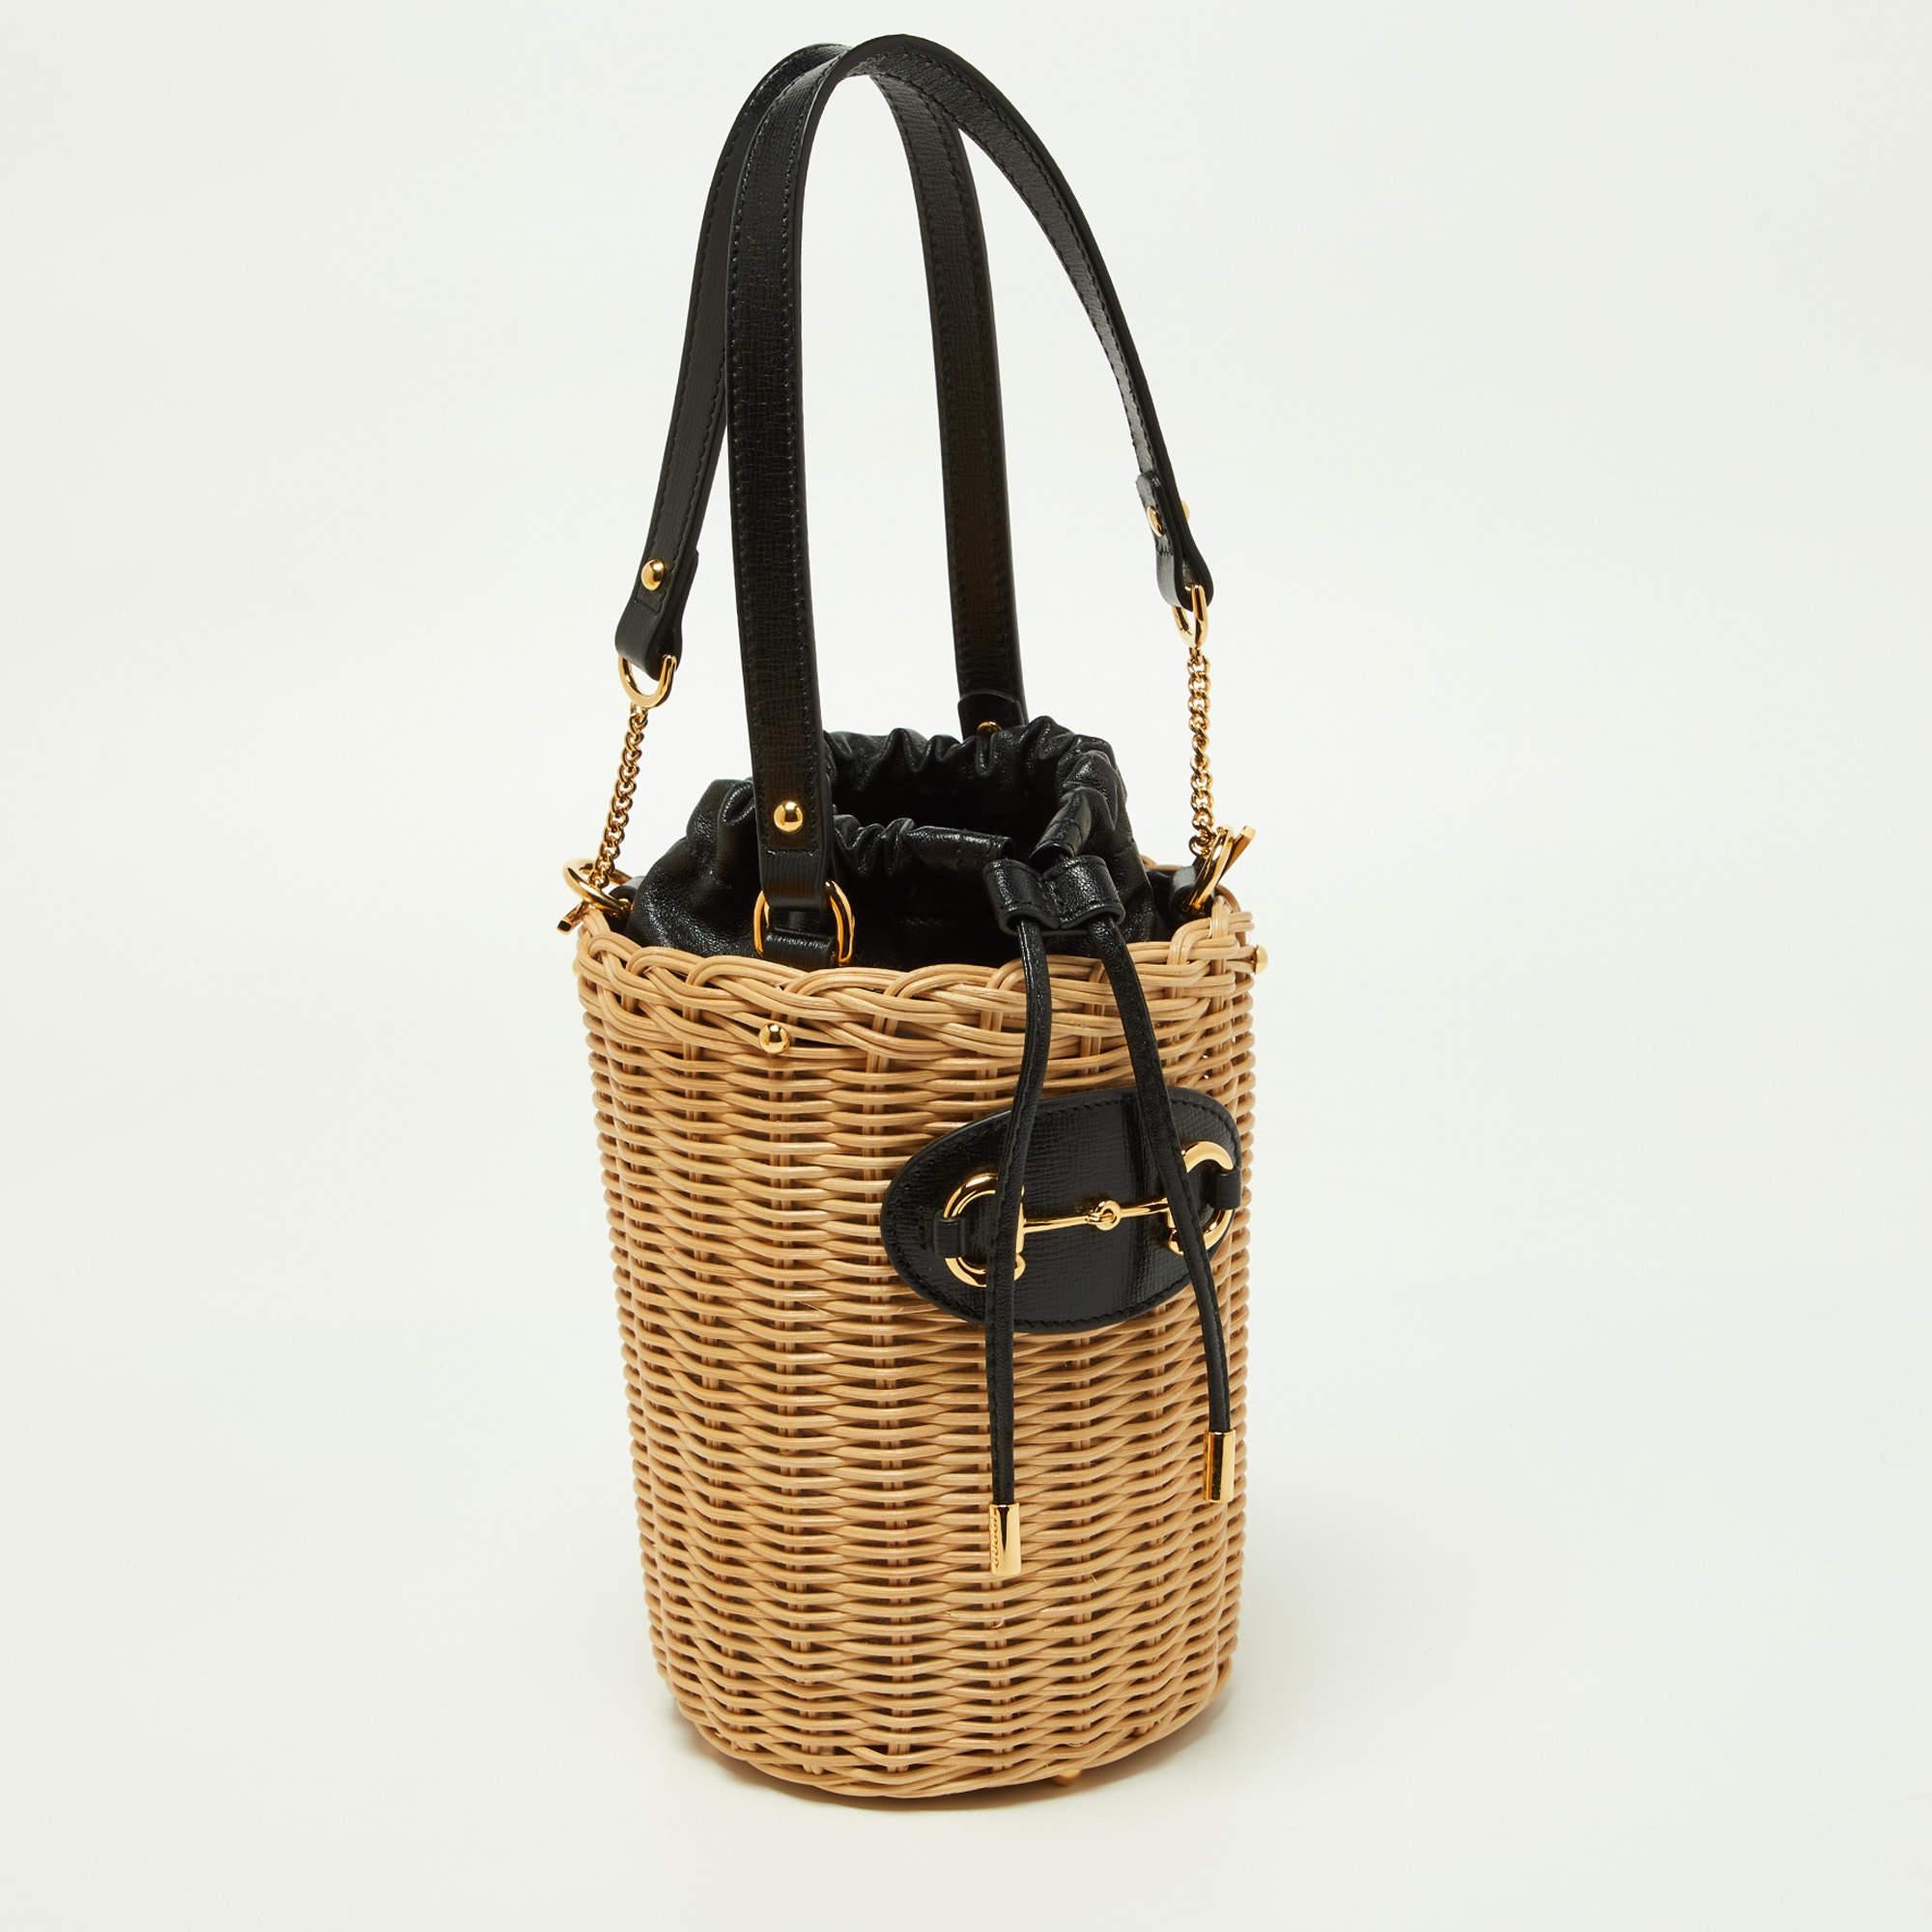 Le sac seau Gucci Horsebit 1955 est un accessoire chic et polyvalent. Son corps est en osier beige avec une garniture en cuir noir, ornée du détail emblématique Horsebit. Le sac est doté d'un intérieur spacieux, d'une fermeture à cordon de serrage